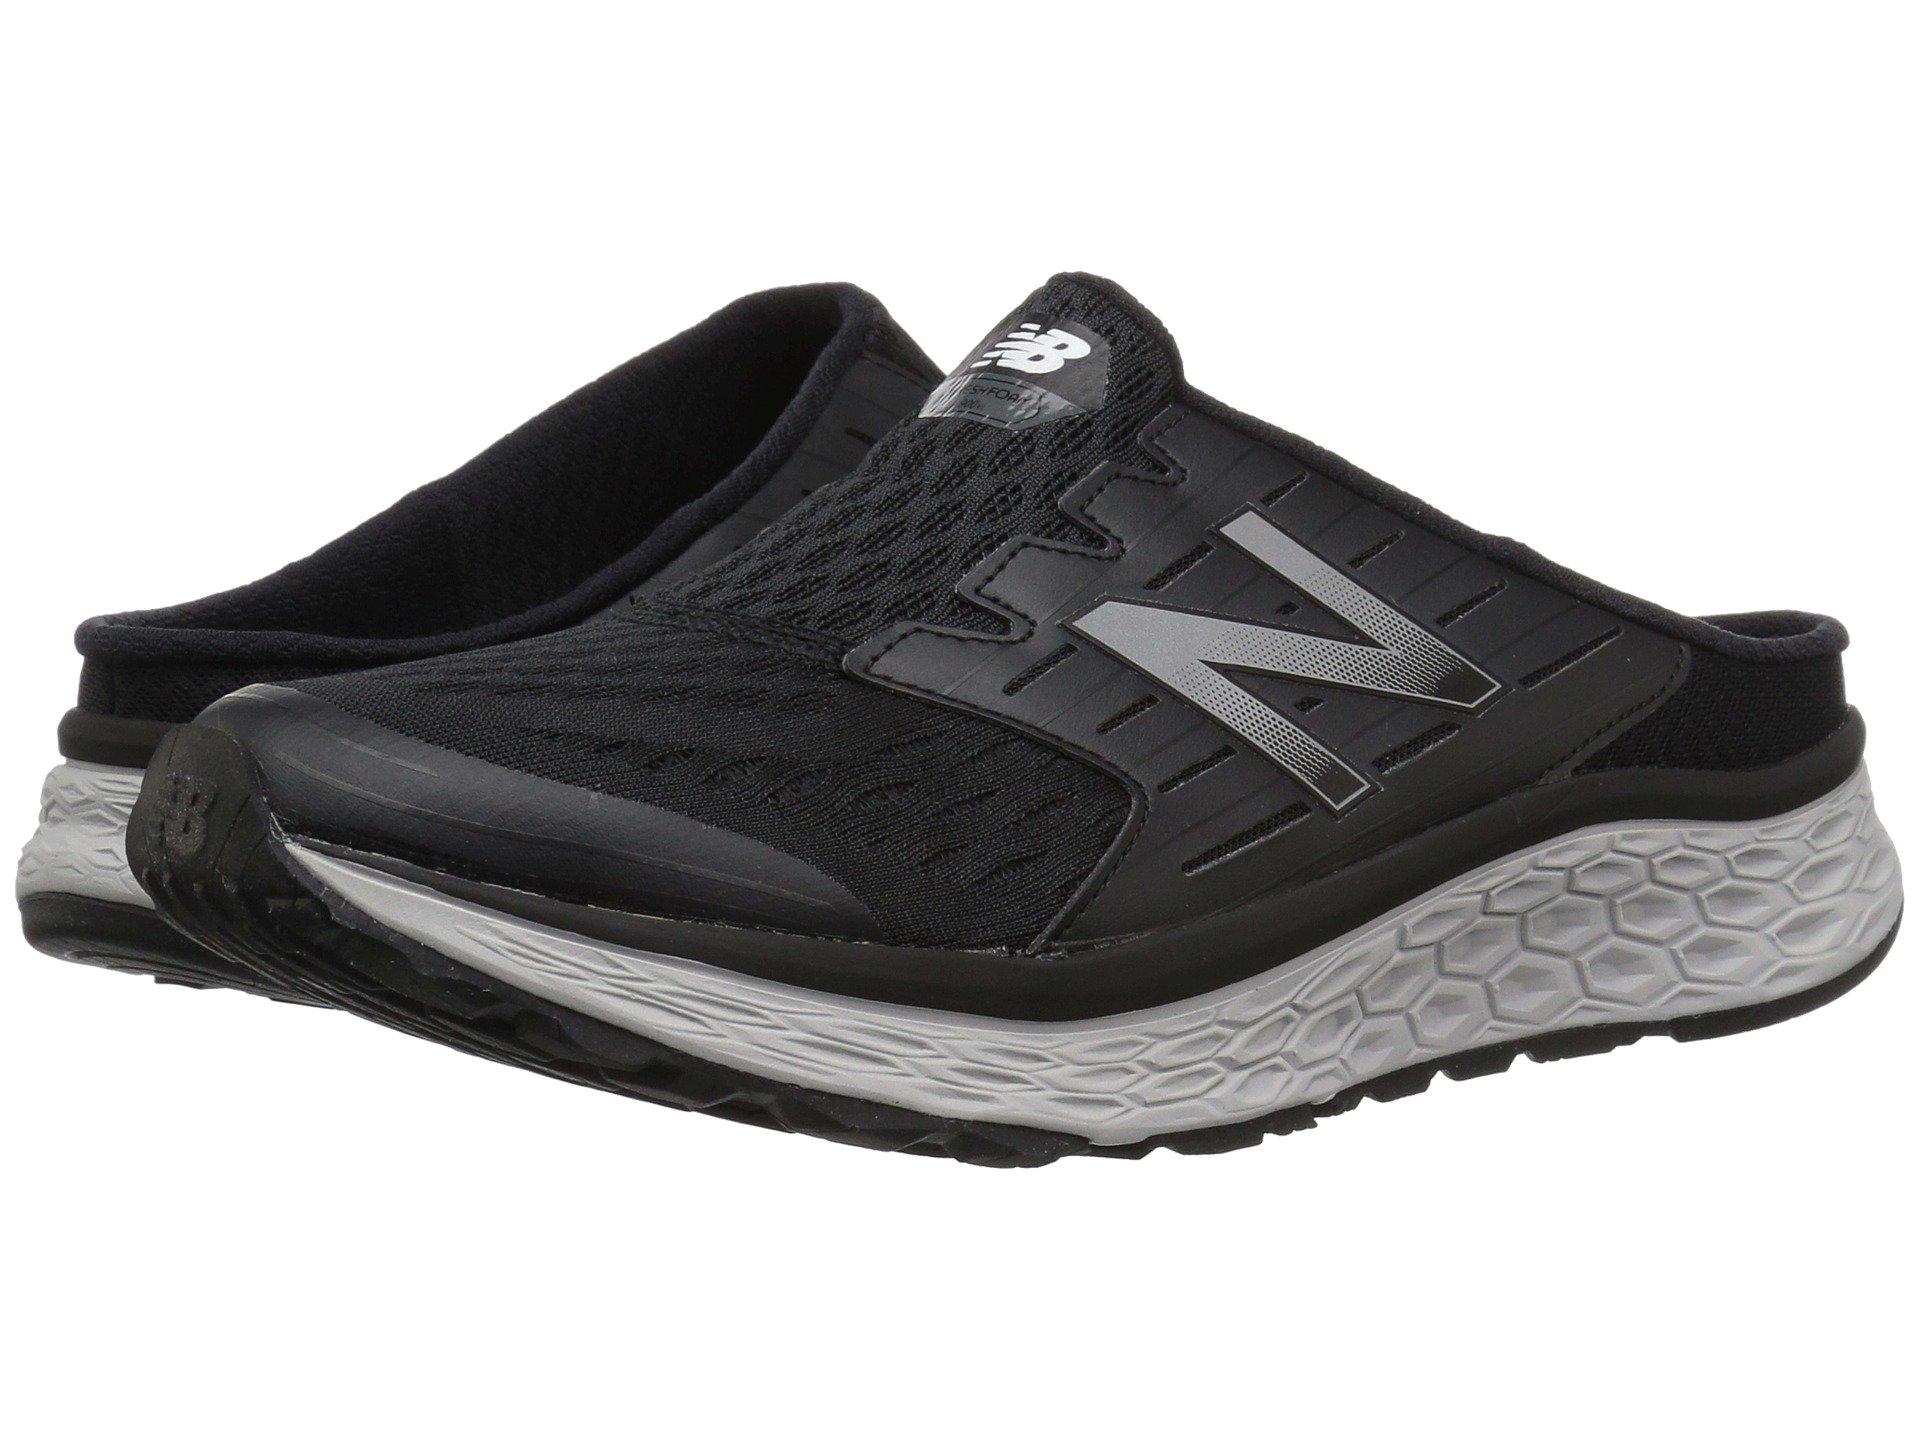 Ma900v1 Walking Walking Shoes in Black 